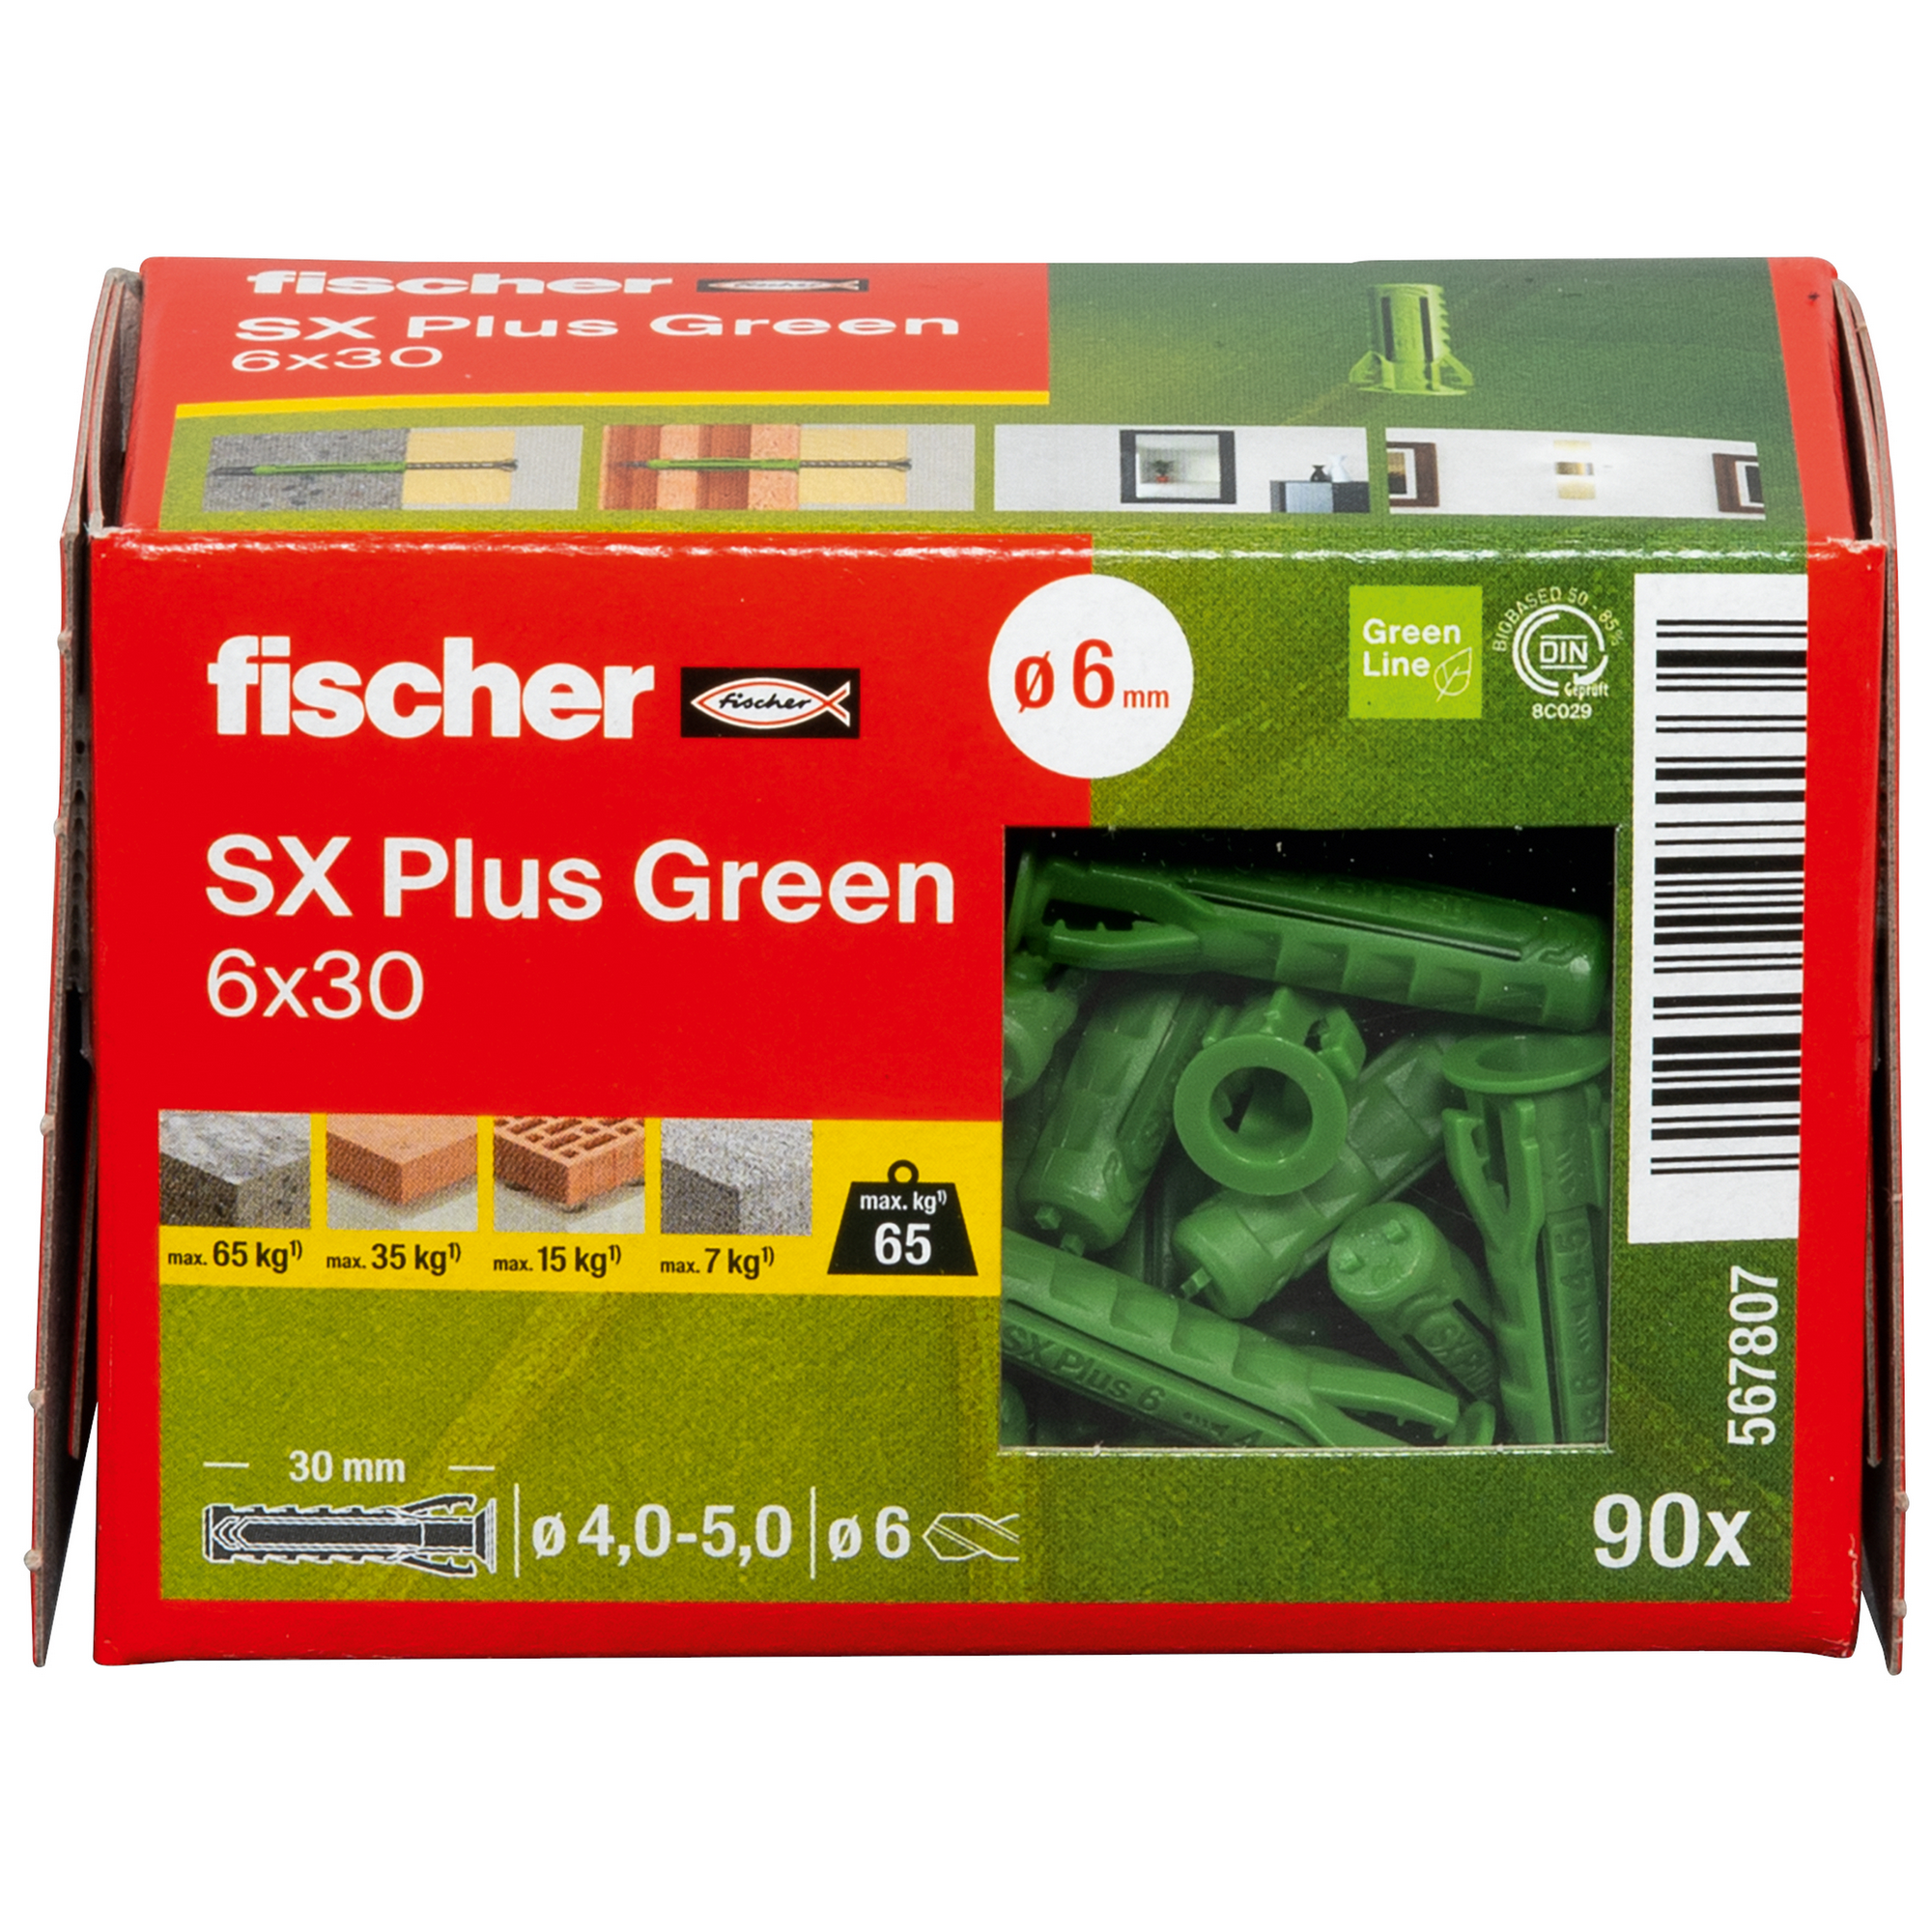 Spreizdübel-Set 'SX Plus Green' Ø 6 x 30 mm, 90-teilig + product picture